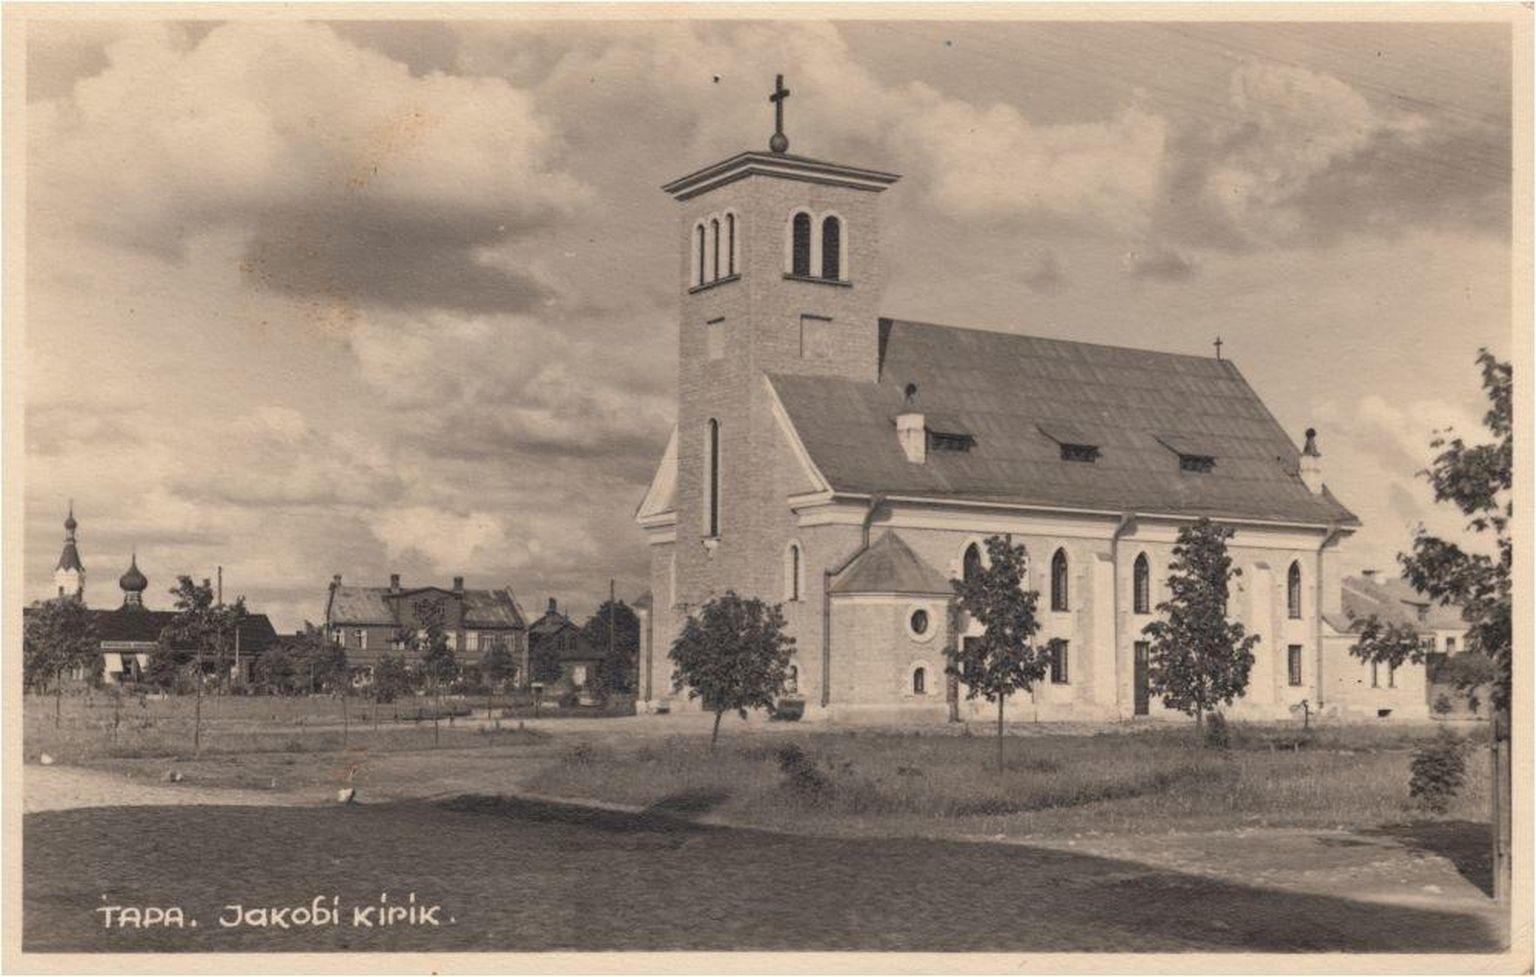 Tapa Jakobi kirik pidi tornikiivrit ootama üle 60 aasta.